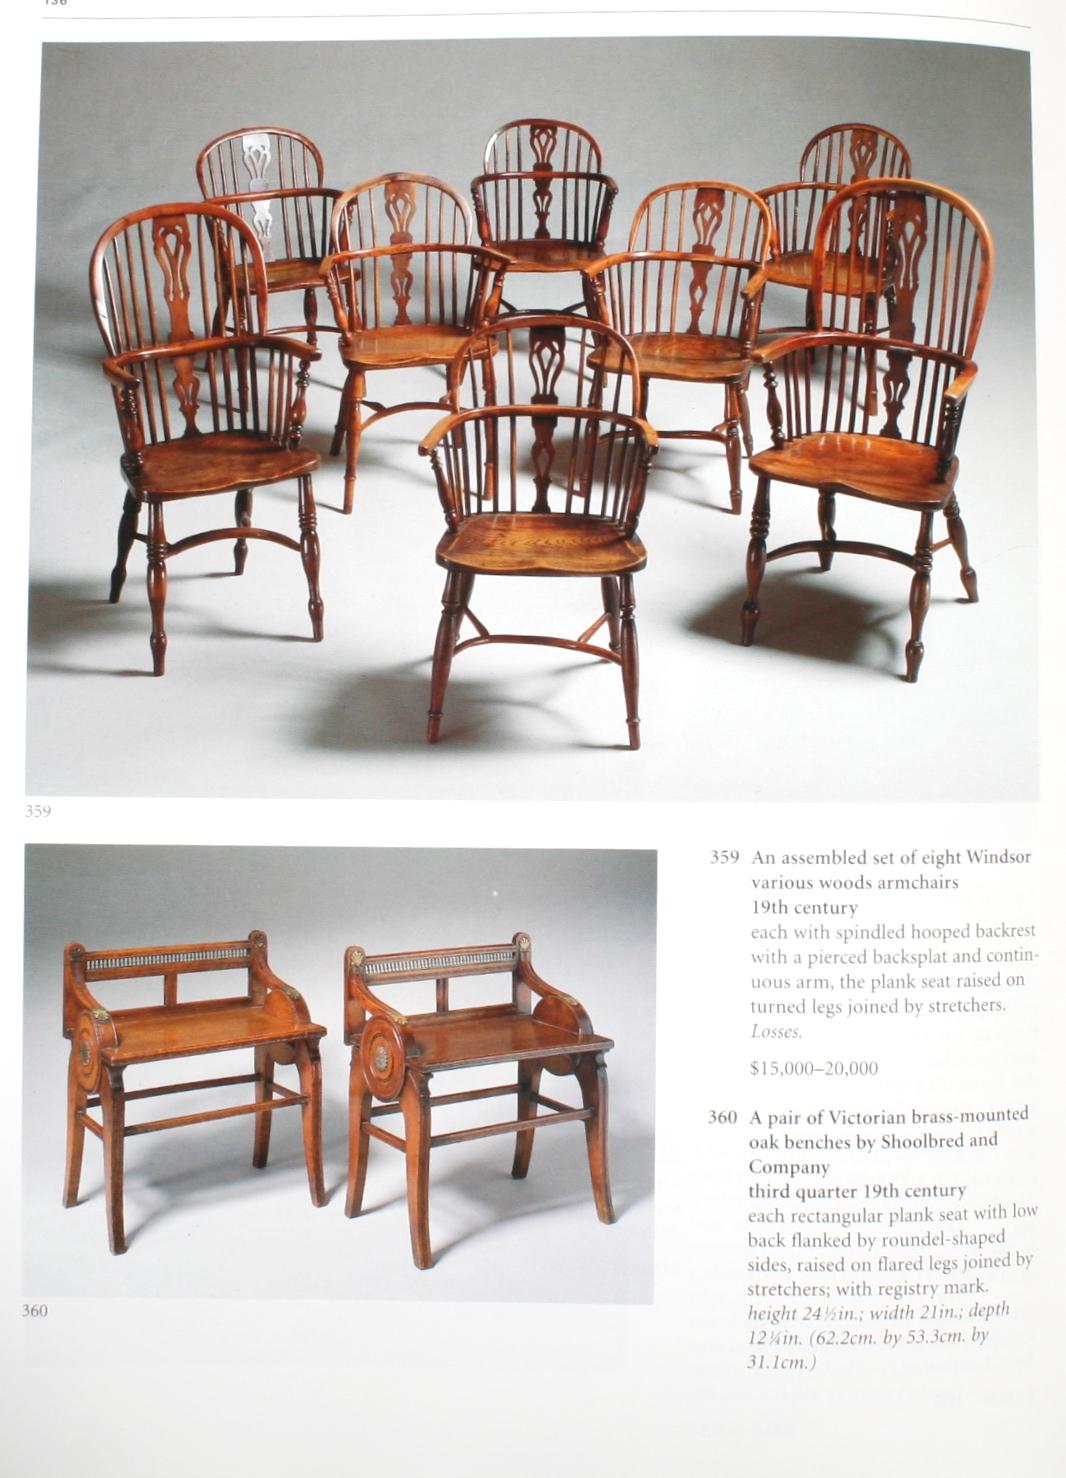 Fin du 20e siècle Sotheby's : English Furniture & Decorations (Meubles et décorations anglais), collection John L. Boonshaft, 1998